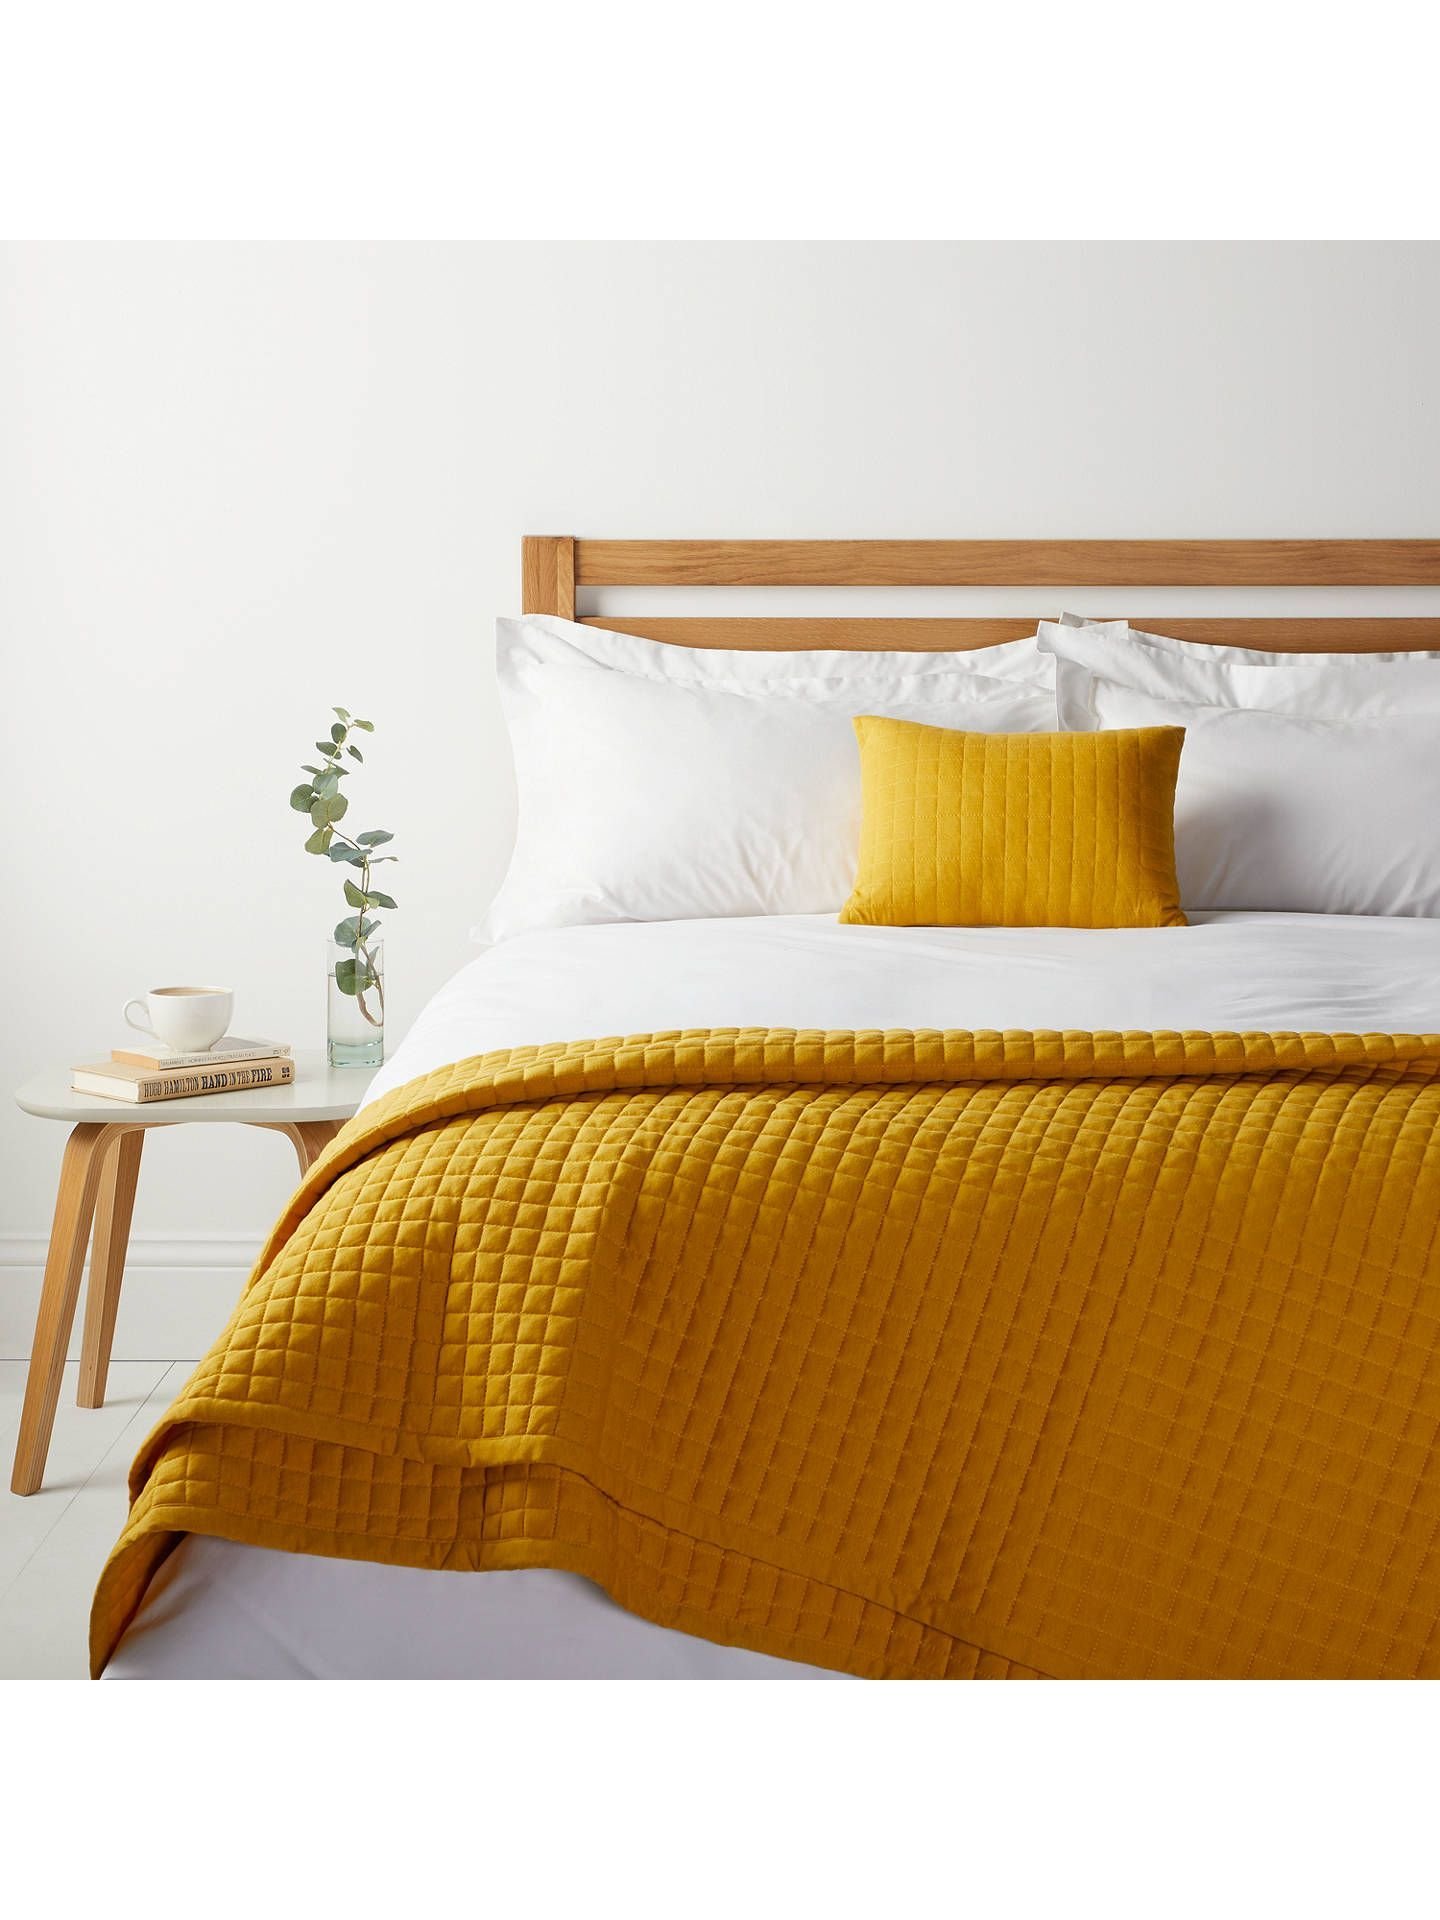 Горчичная кровать. Постельное белье беддинг Хаус. Покрывало горчичного цвета. Желтое покрывало на кровать. Кровать горчичного цвета.